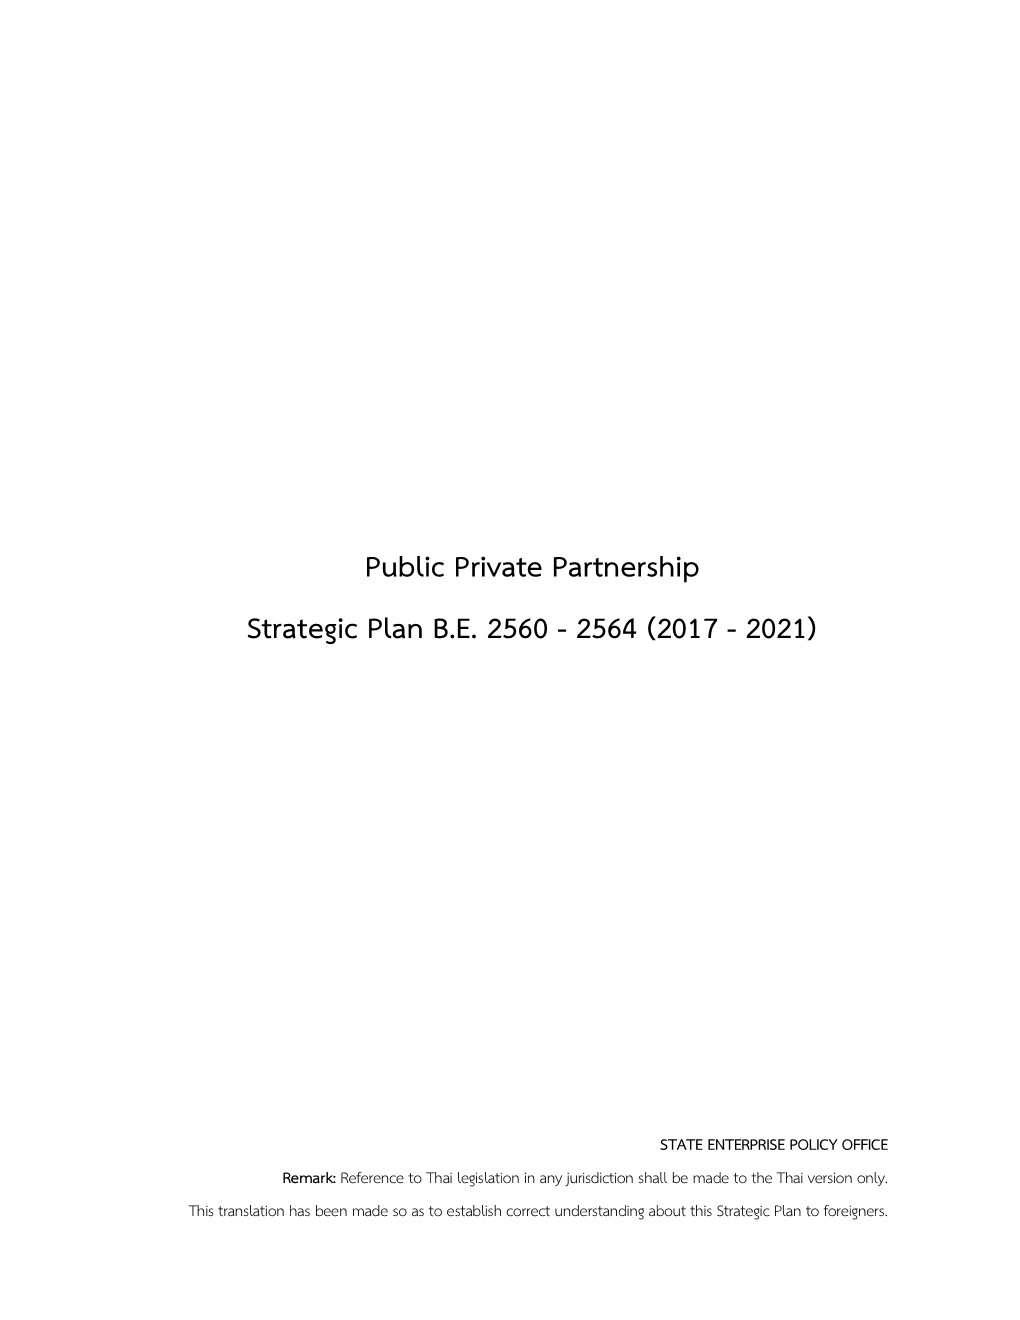 Public Private Partnership Strategic Plan B.E. 2560 - 2564 (2017 - 2021)